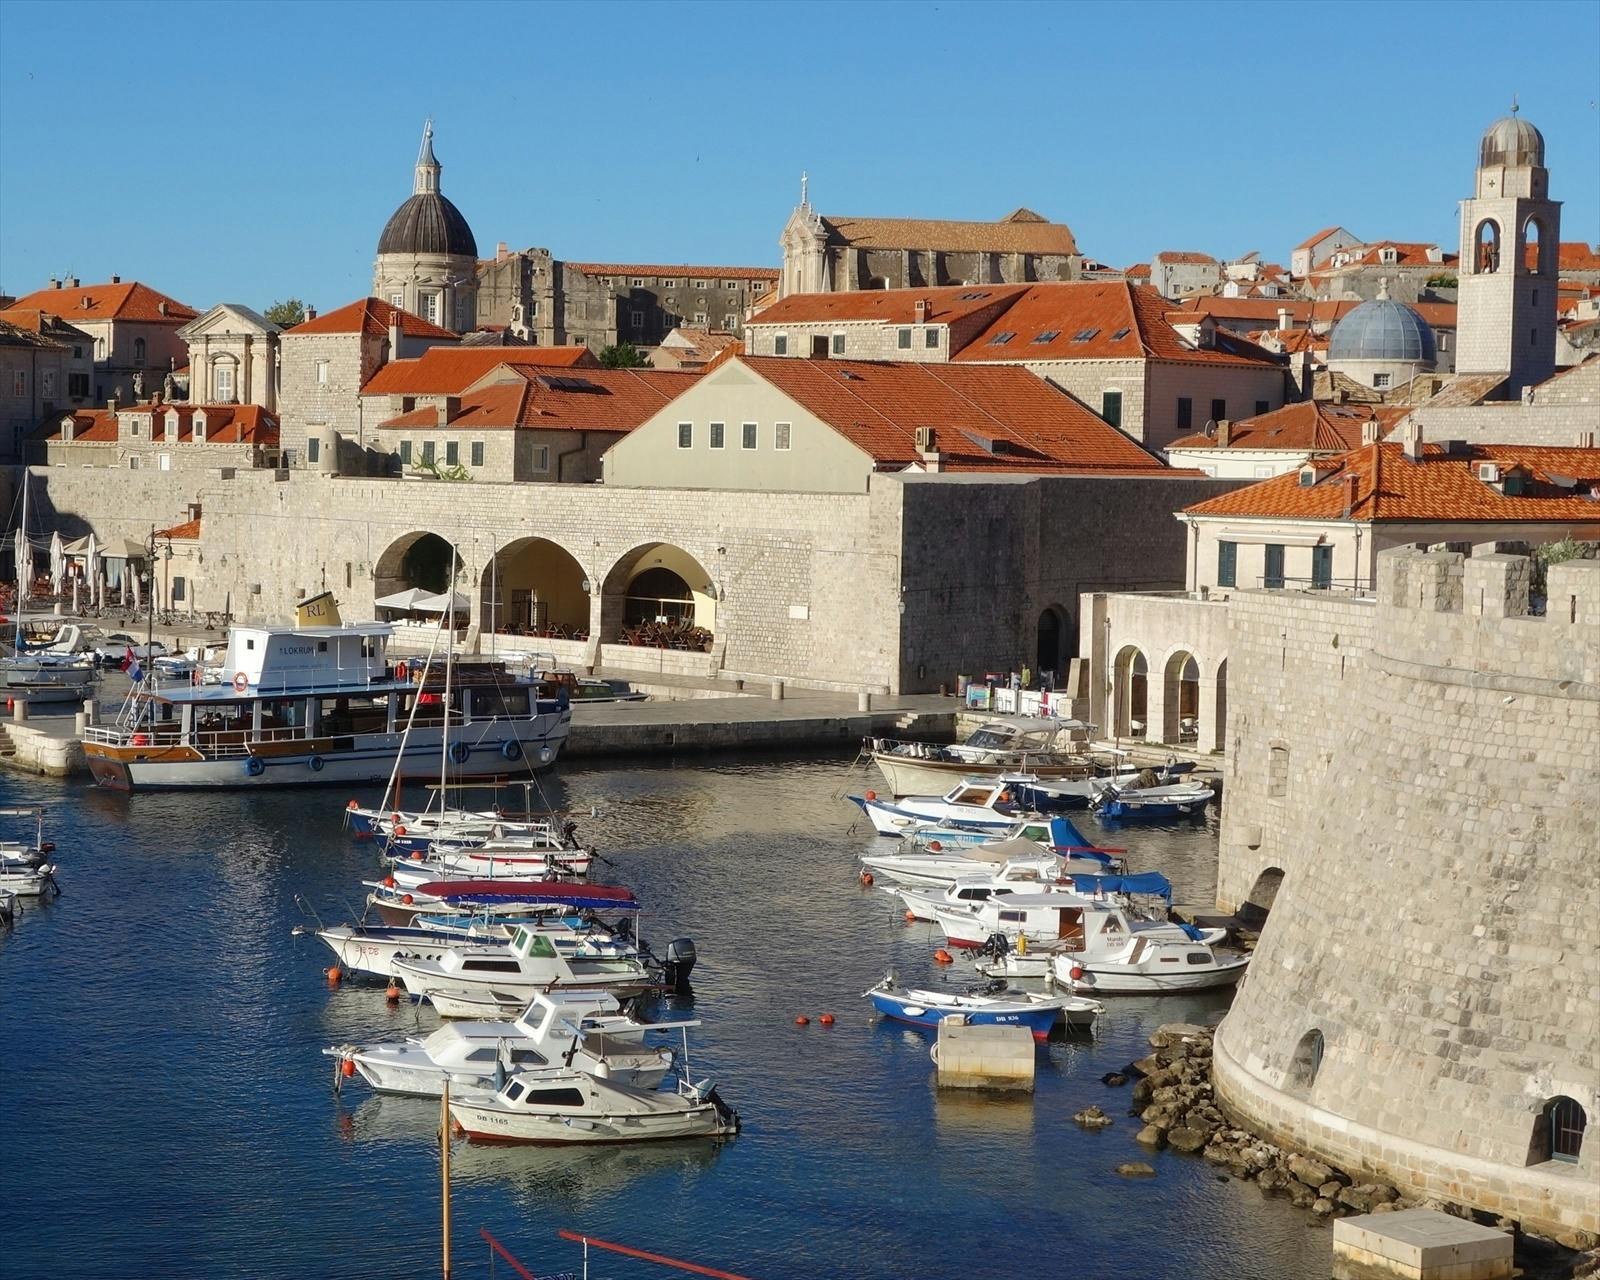 Tour panorâmico privado em Dubrovnik de carro ou van